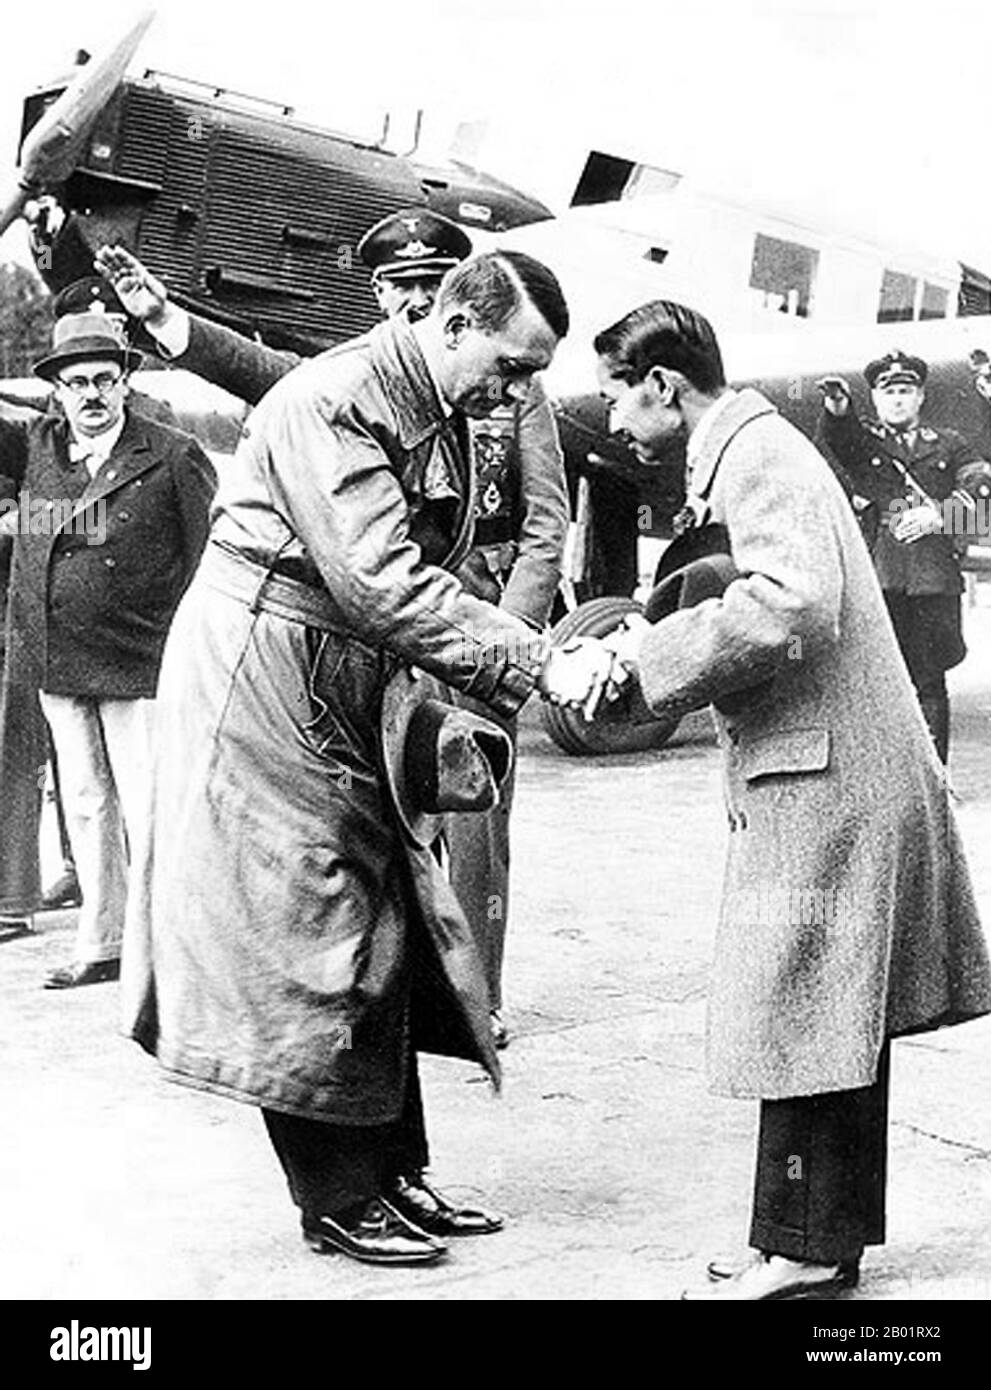 Thaïlande/Allemagne : le roi de Thaïlande Prajadhipok (8 novembre 1893 - 30 mai 1941) rencontre le chancelier allemand Adolf Hitler (20 avril 1889 - 30 avril 1945), aéroport de Templehof, Berlin, 1936. Phra Bat Somdet Phra Poramintharamaha Prajadhipok Phra Pok Klao Chao Yu Hua (thaï : พระบาทสมเด็จพระปรมินทรมหาประชาธิปกฯ พระปกเกล้าเจ้าอยู่หัว), ou Rama VII, est le septième monarque du Siam sous la Maison des Chakri. Il fut le dernier monarque absolu et le premier monarque constitutionnel du pays. Son règne fut une période agitée pour le Siam en raison des énormes changements politiques et sociaux survenus pendant la Révolution de 1932. Banque D'Images